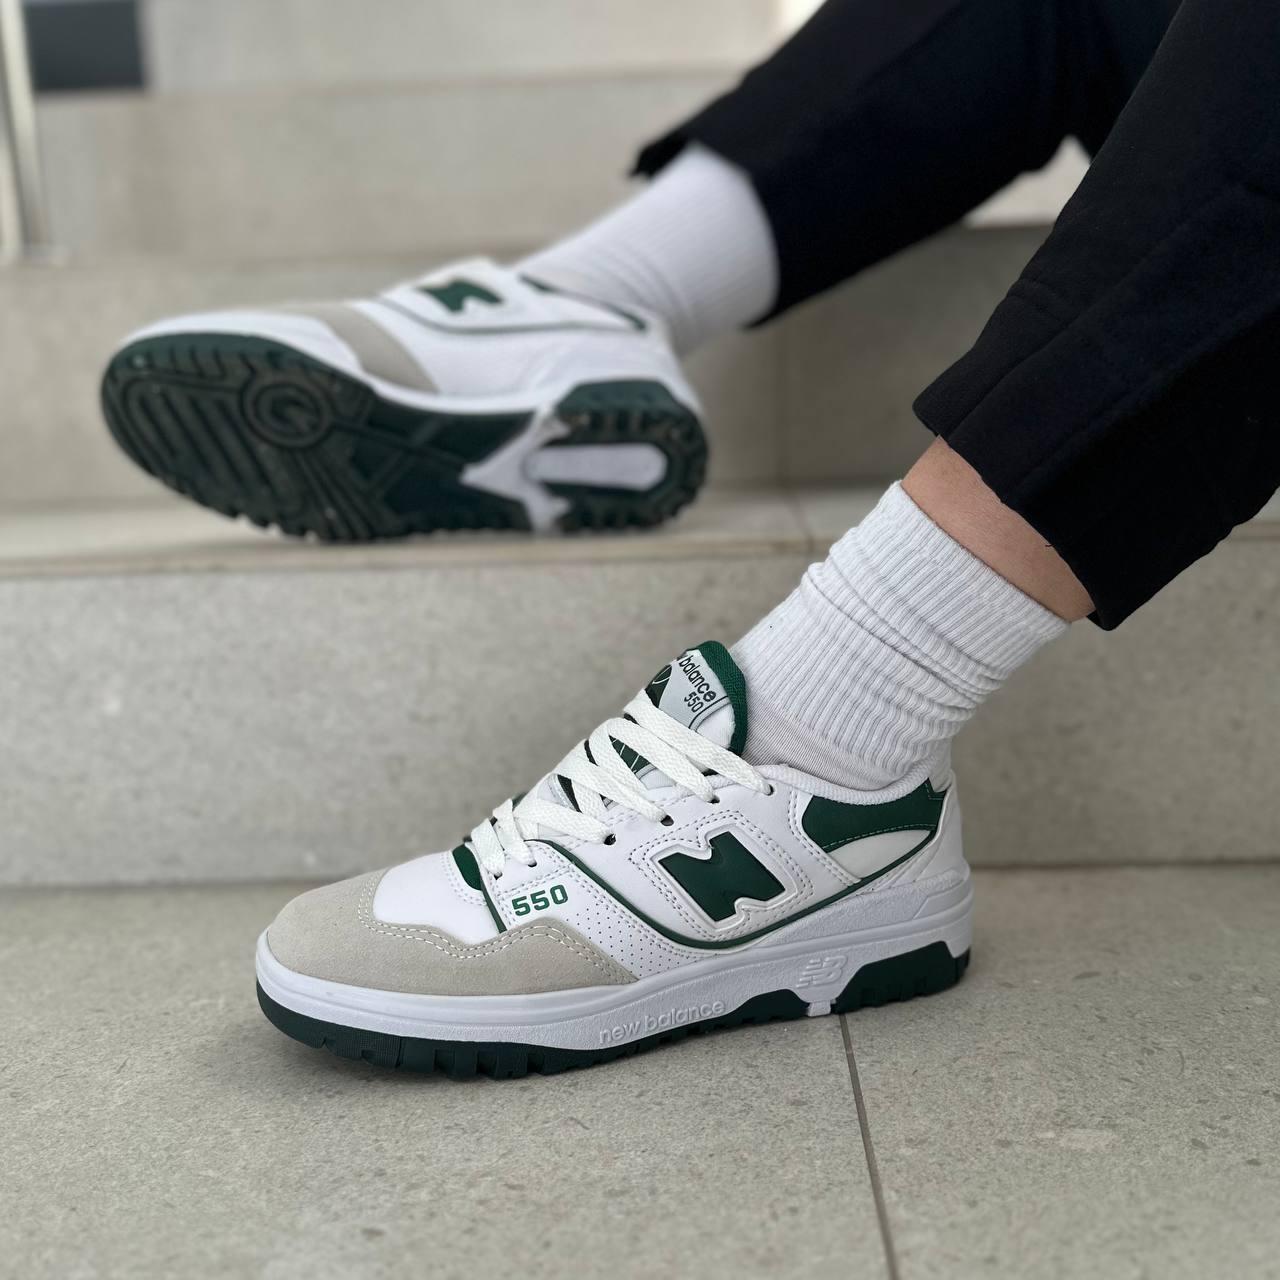 Жіночі білі кросівки NB 550 зі вставками зеленого кольору 39 р (25 см)